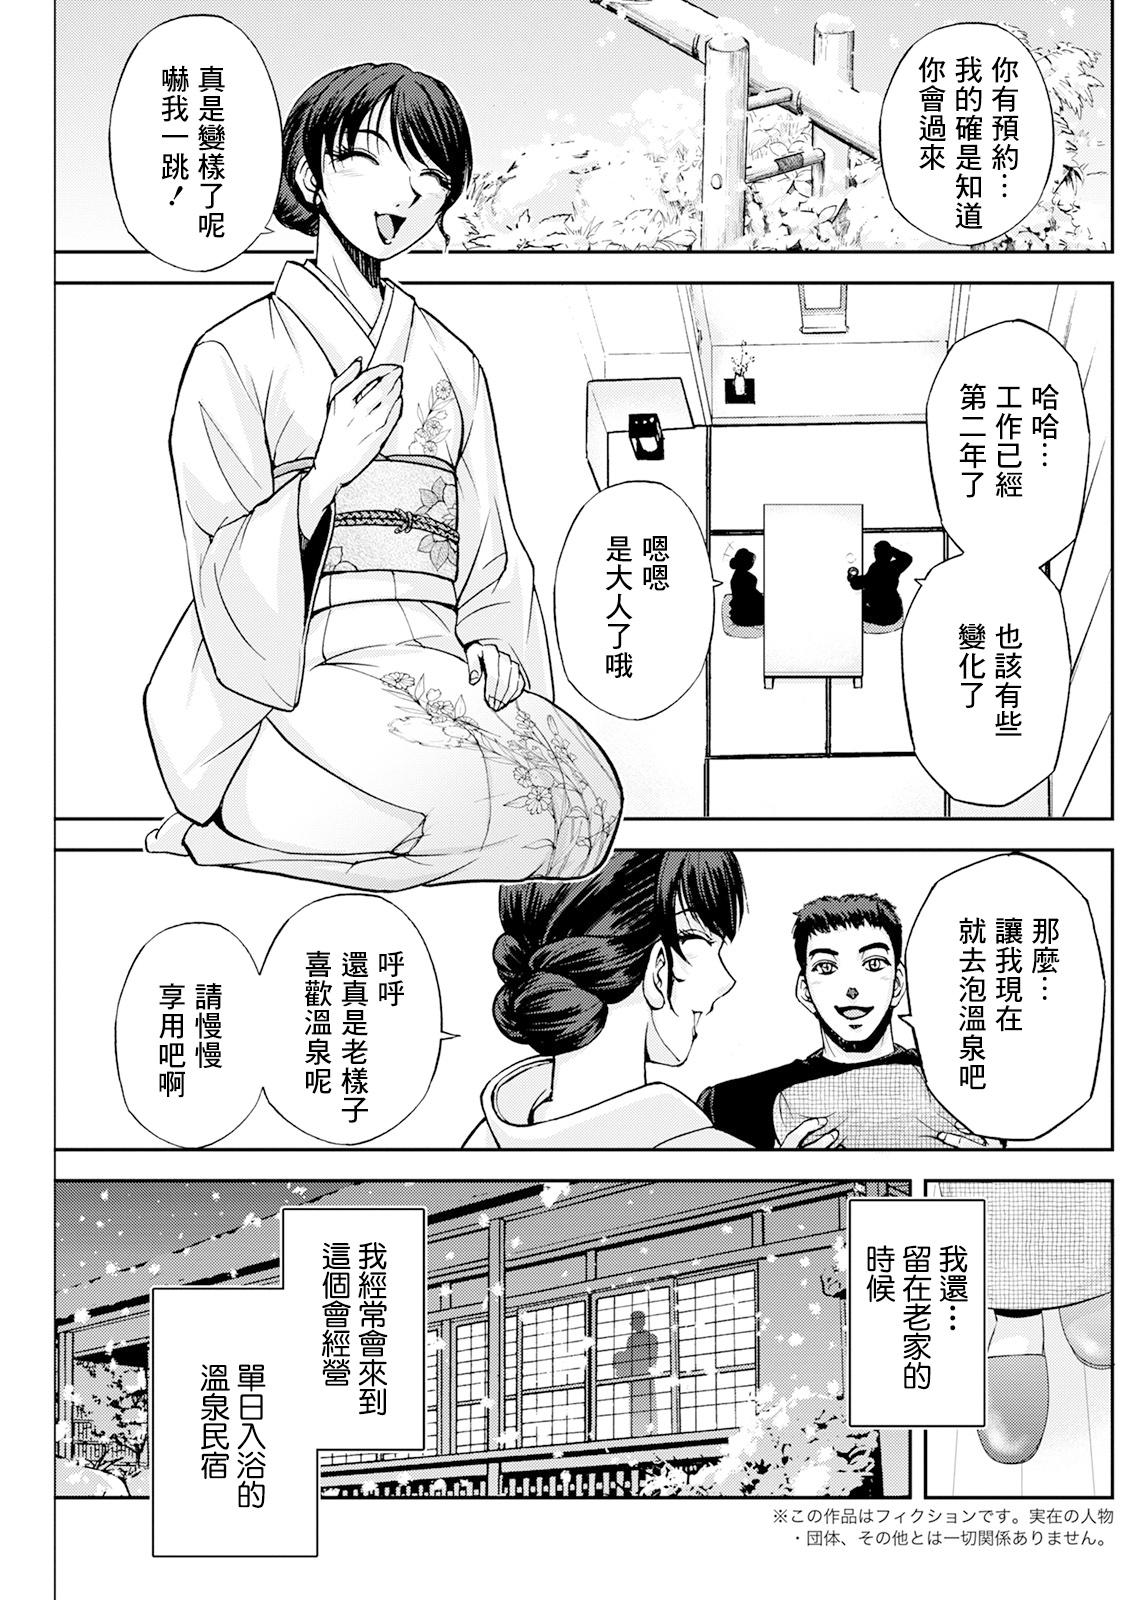 Camgirl Okami no Touko-chan Zenpen - Original Stretch - Page 3